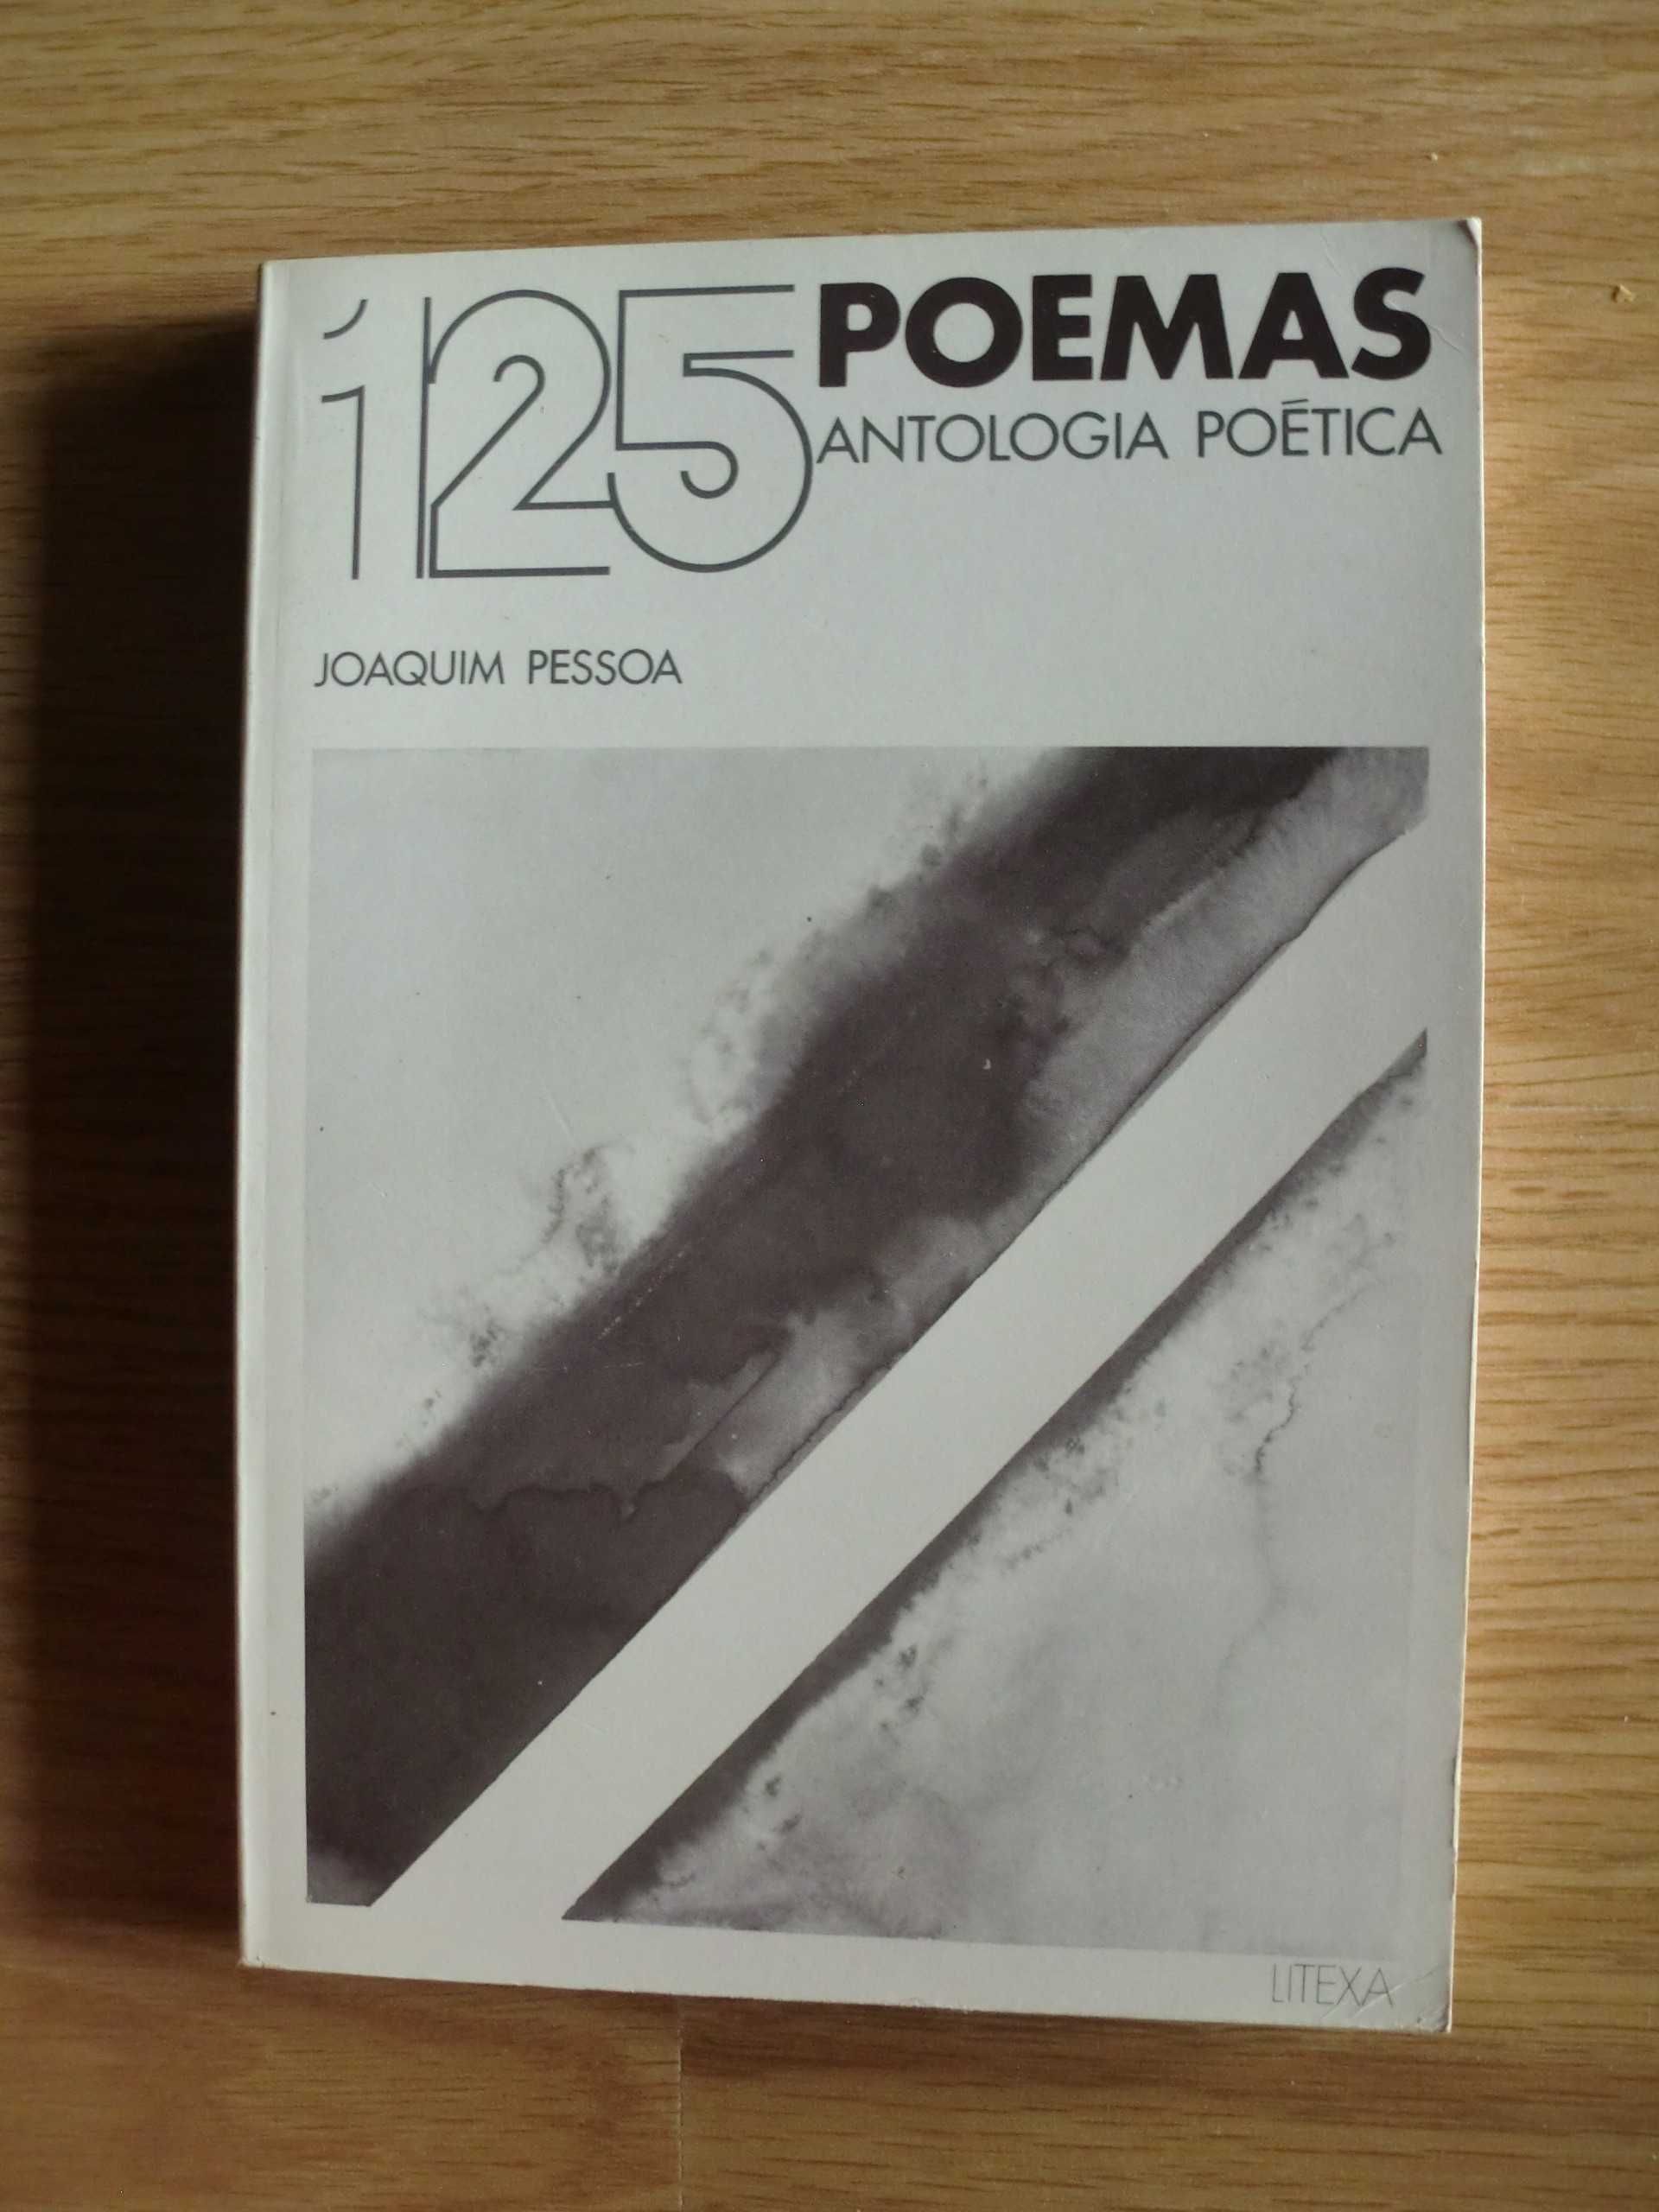 125 Poemas - Antologia Poética
de Joaquim Pessoa